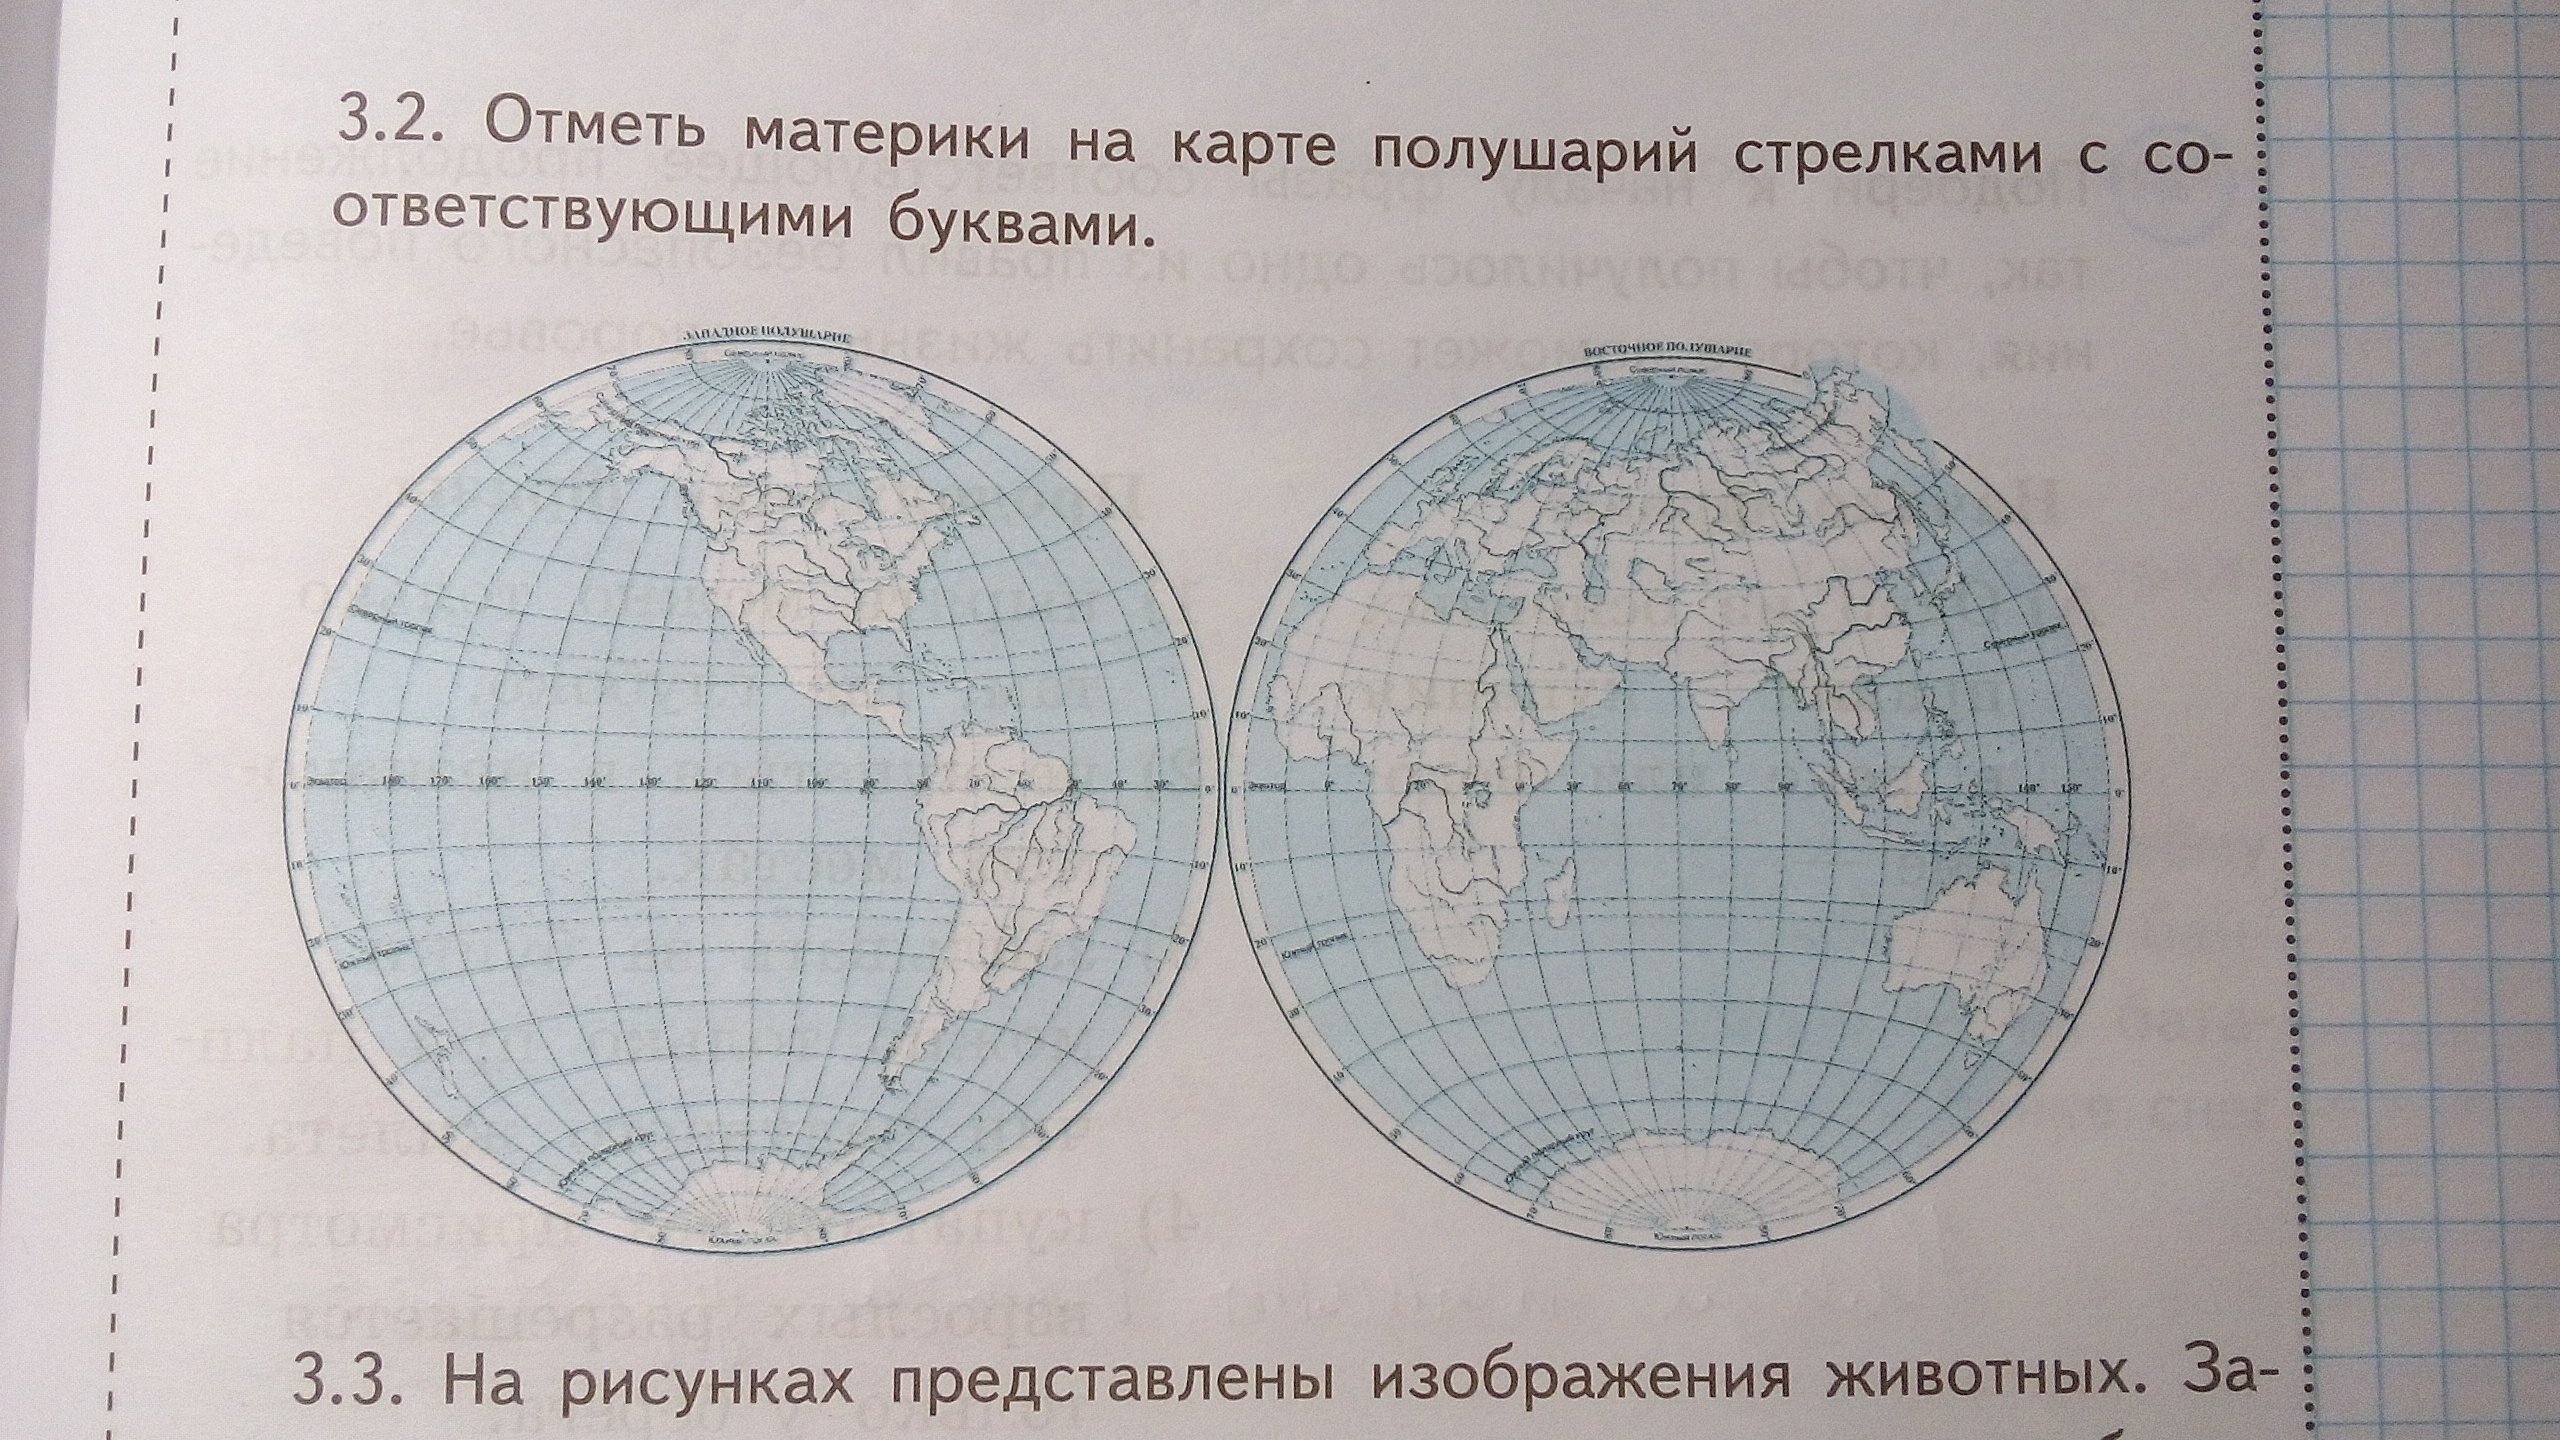 Контрольная работа 2 изображение земной поверхности. Карта полушарий материков. Отметь на карте полушарий. Отметь материки на карте полушарий. Отметь материки на карте полушарий стрелками.